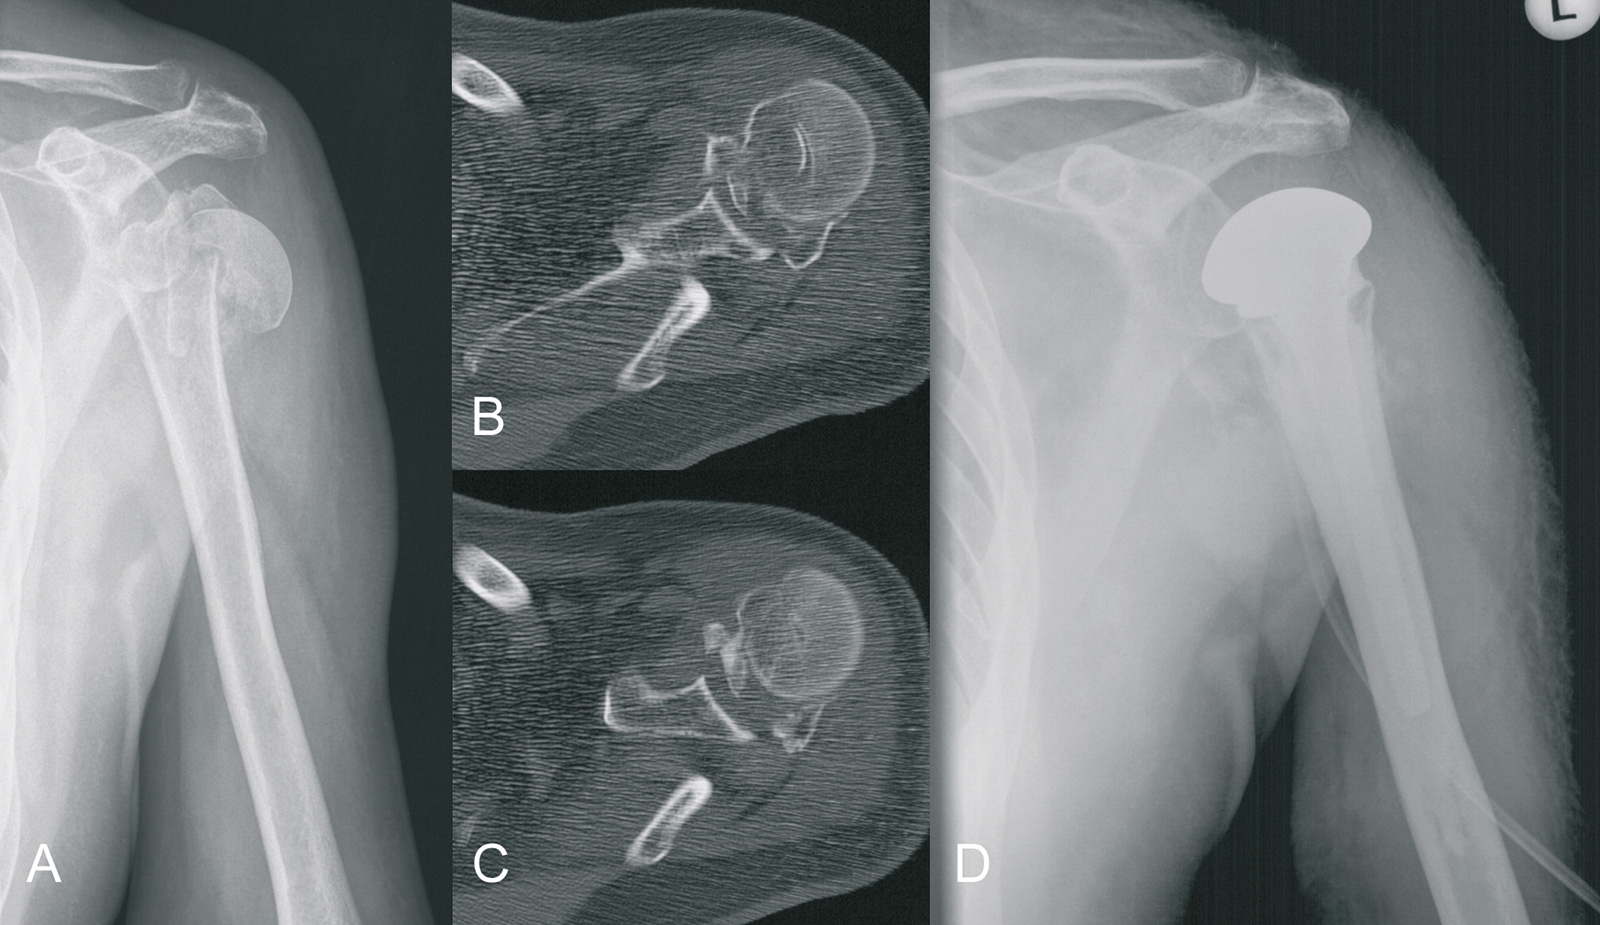 Abb. 3-71: Trümmerfraktur bei einer 74-jährigen Patientin: natives Röntgenbild (A), CT-Bildgebung (B,C), Röntgenbild nach Versorgung mit einer Hemiprothese (D)